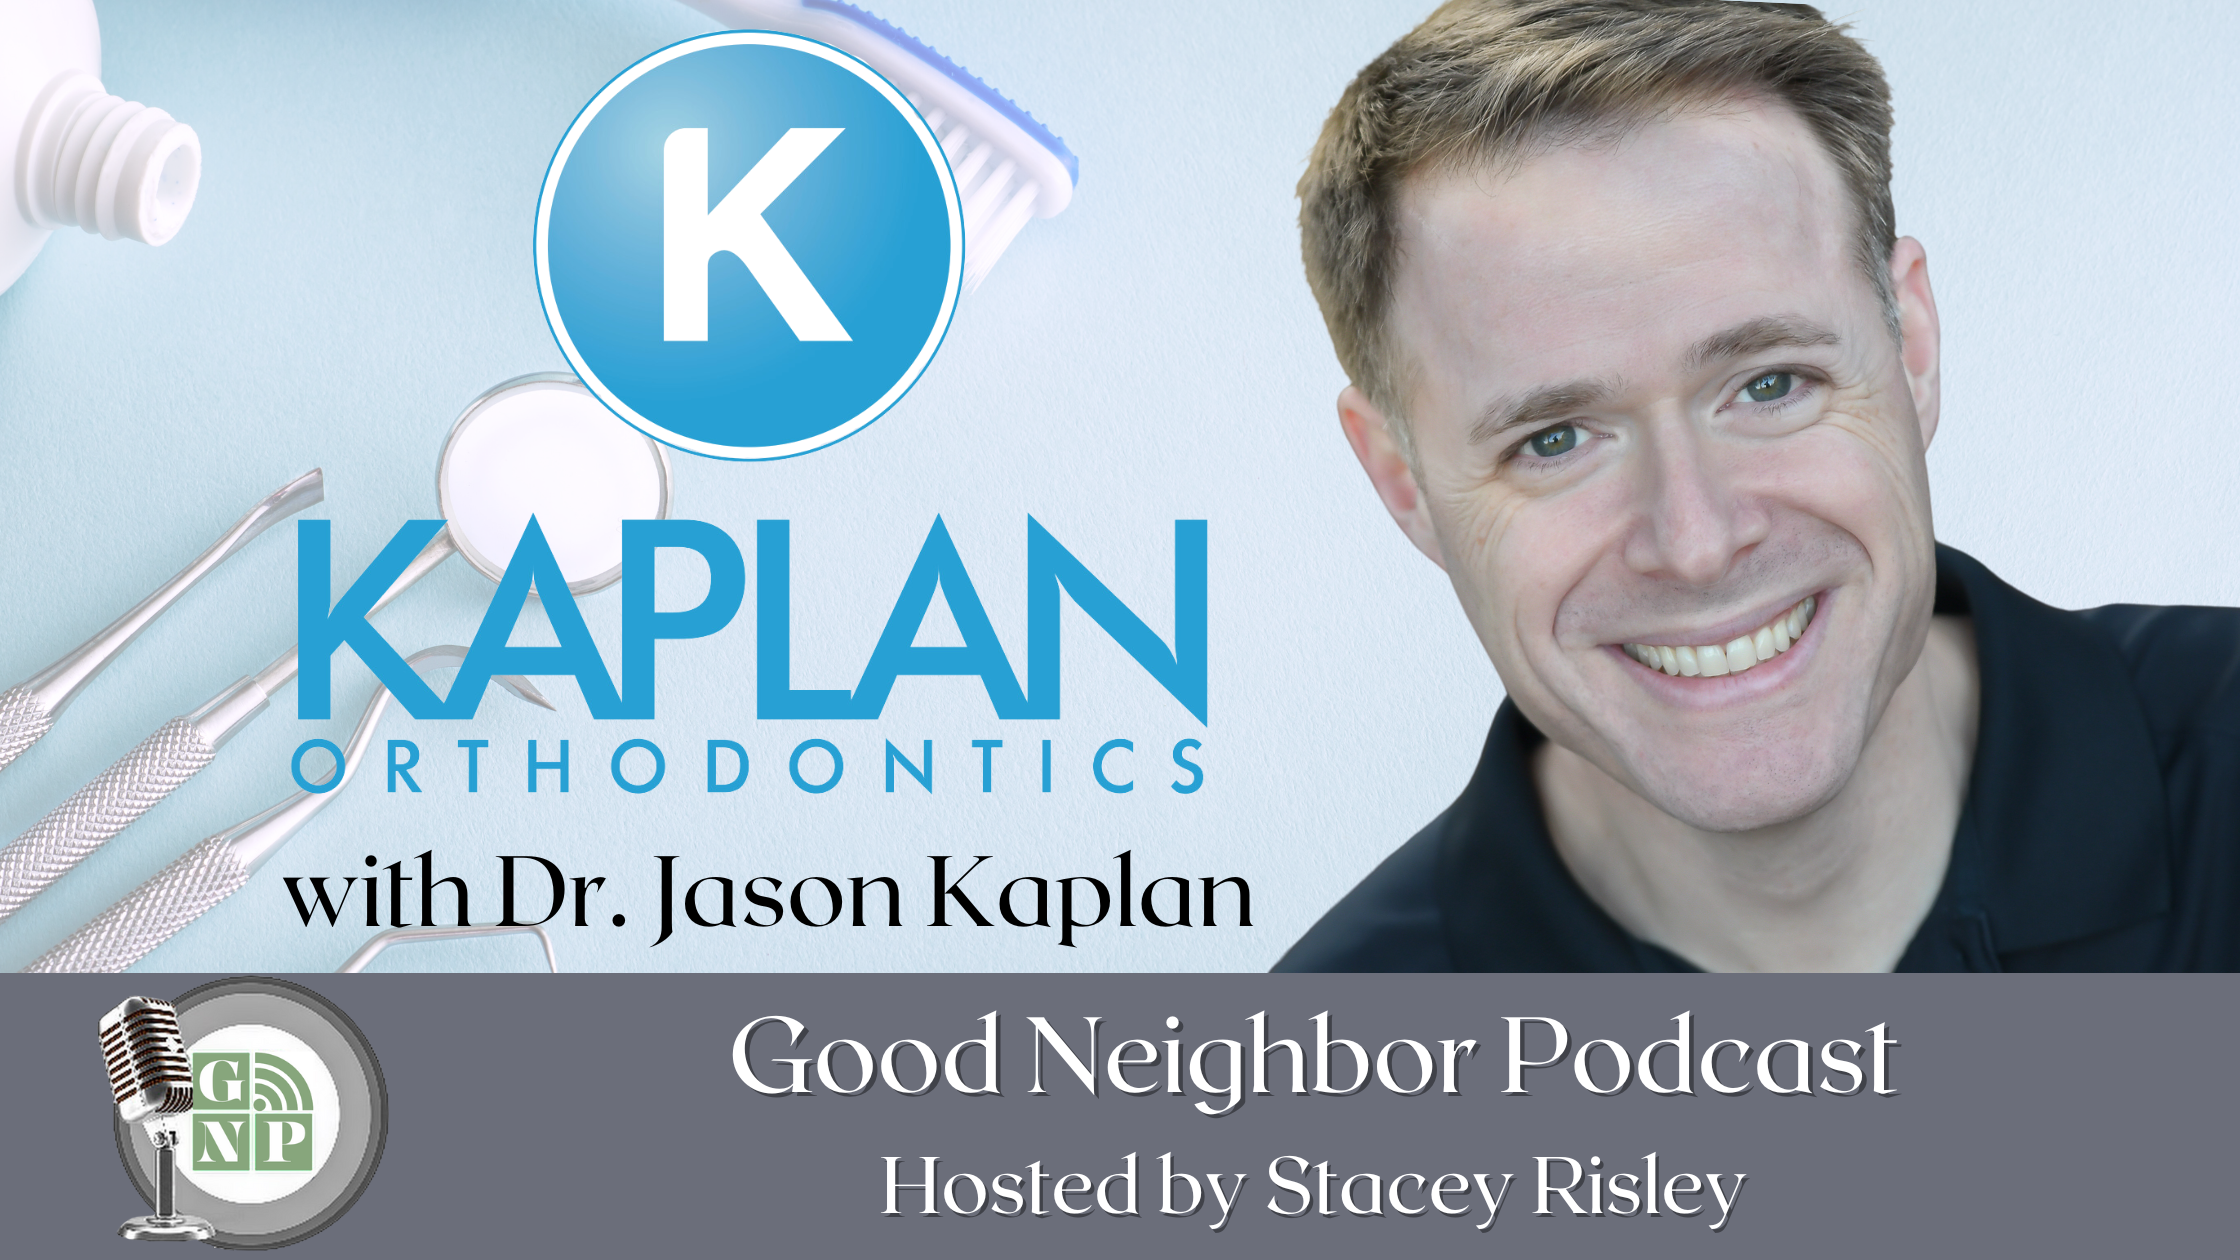 EP #65: Kaplan Orthodontics - Do Braces Cause Cavities? with Dr. Jason Kaplan